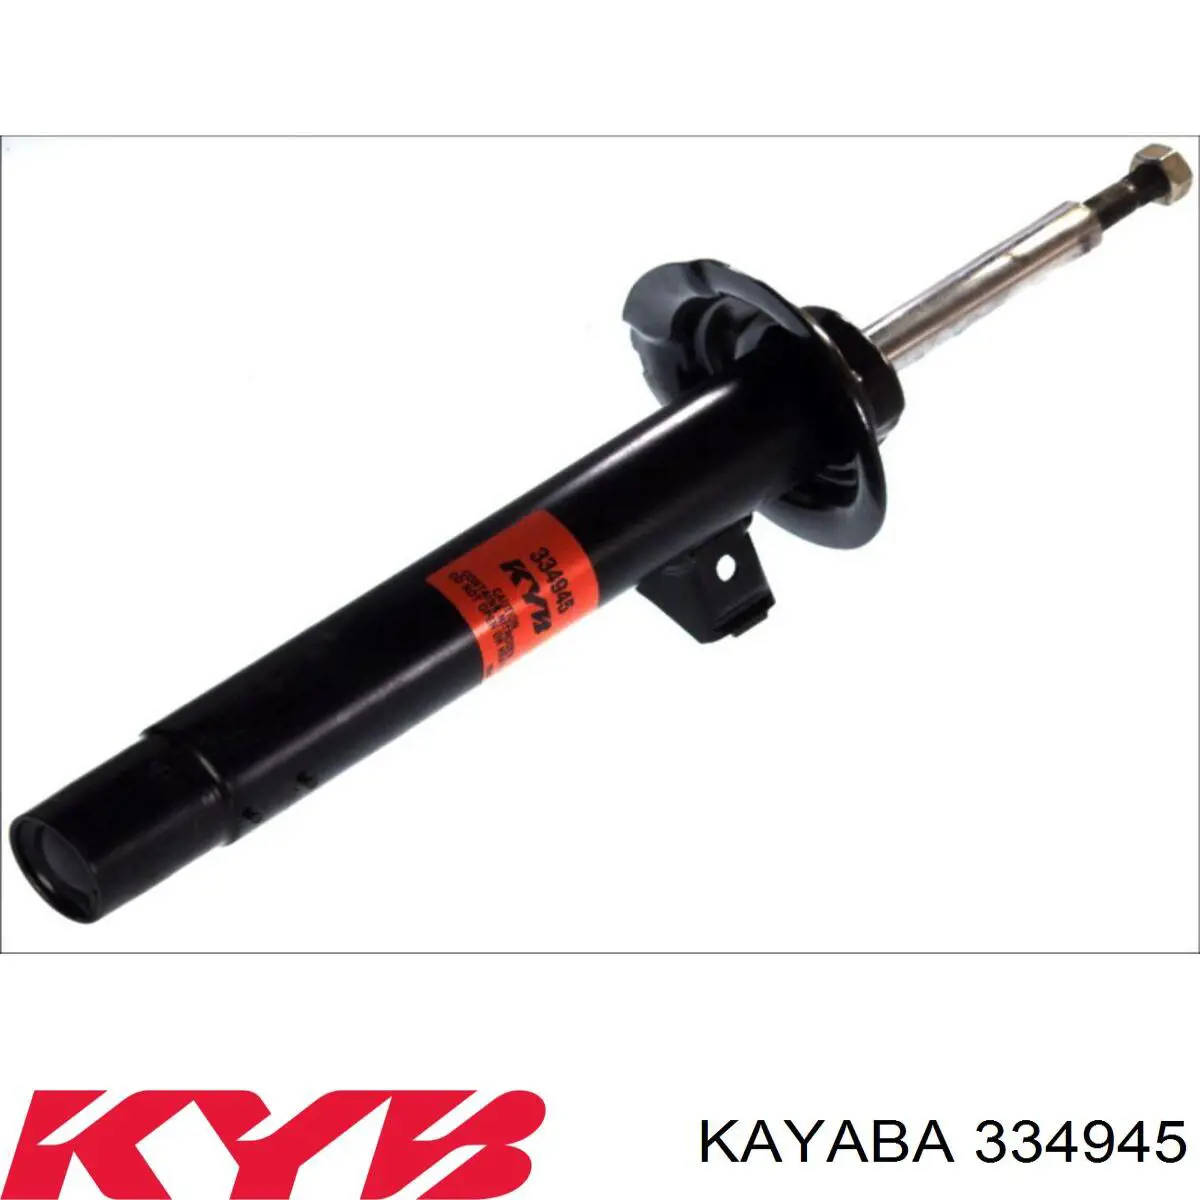 334945 Kayaba amortiguador delantero derecho